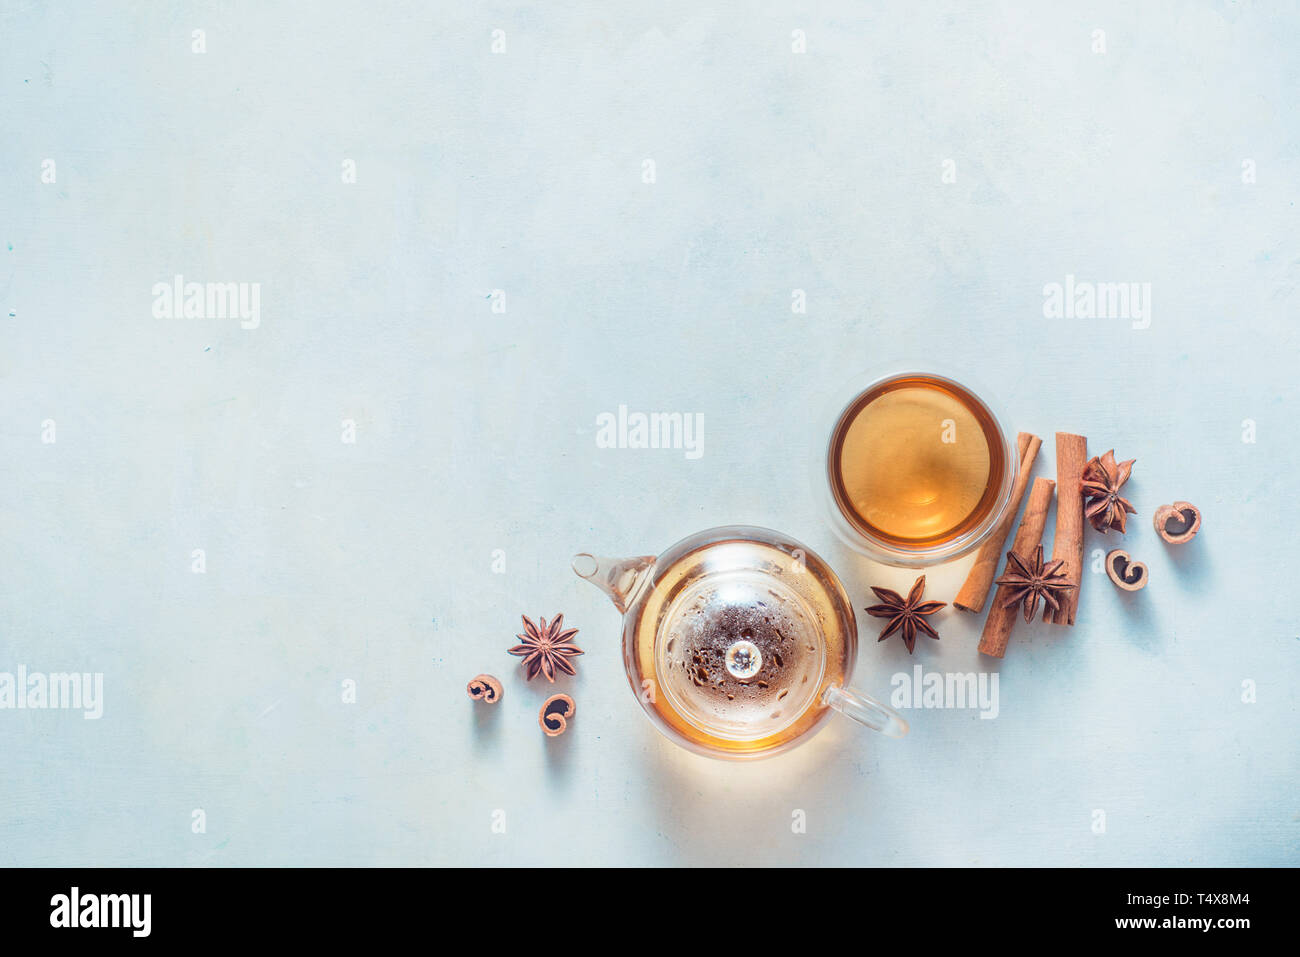 Teekanne aus Glas und Holz Schalen auf einem weißen Hintergrund mit Zimt und Anis Sterne. Minimalistische essen Flach mit Gewürzen. Stockfoto